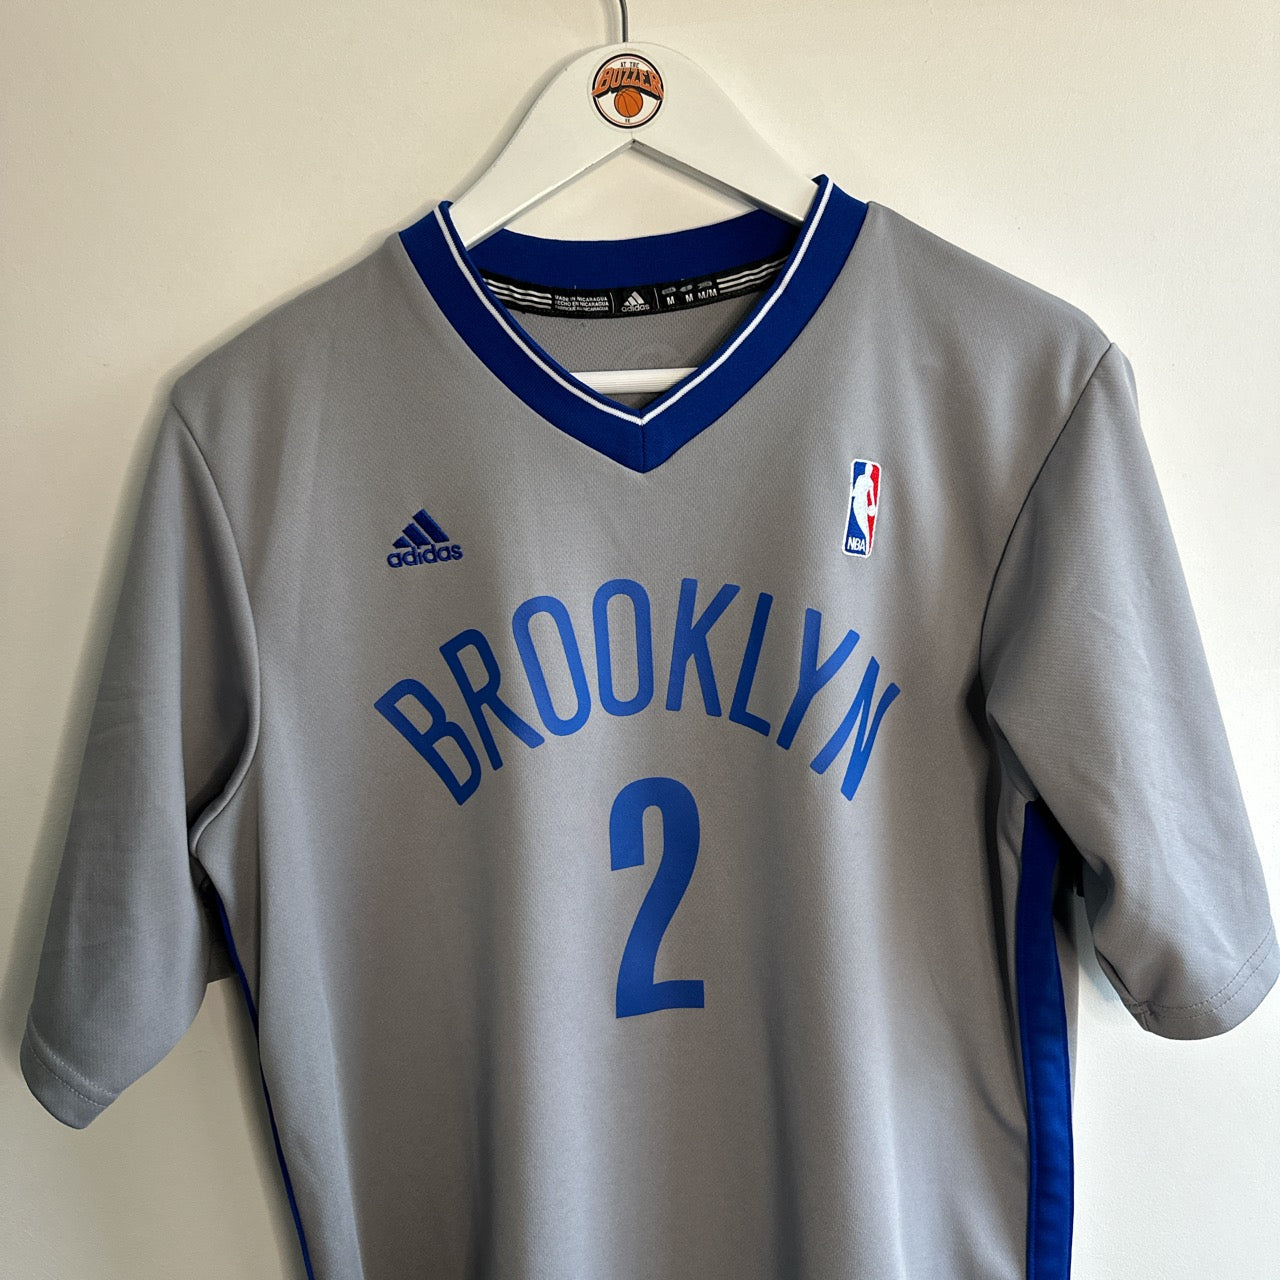 Brooklyn Nets Kevin Garnett Adidas jersey - Medium